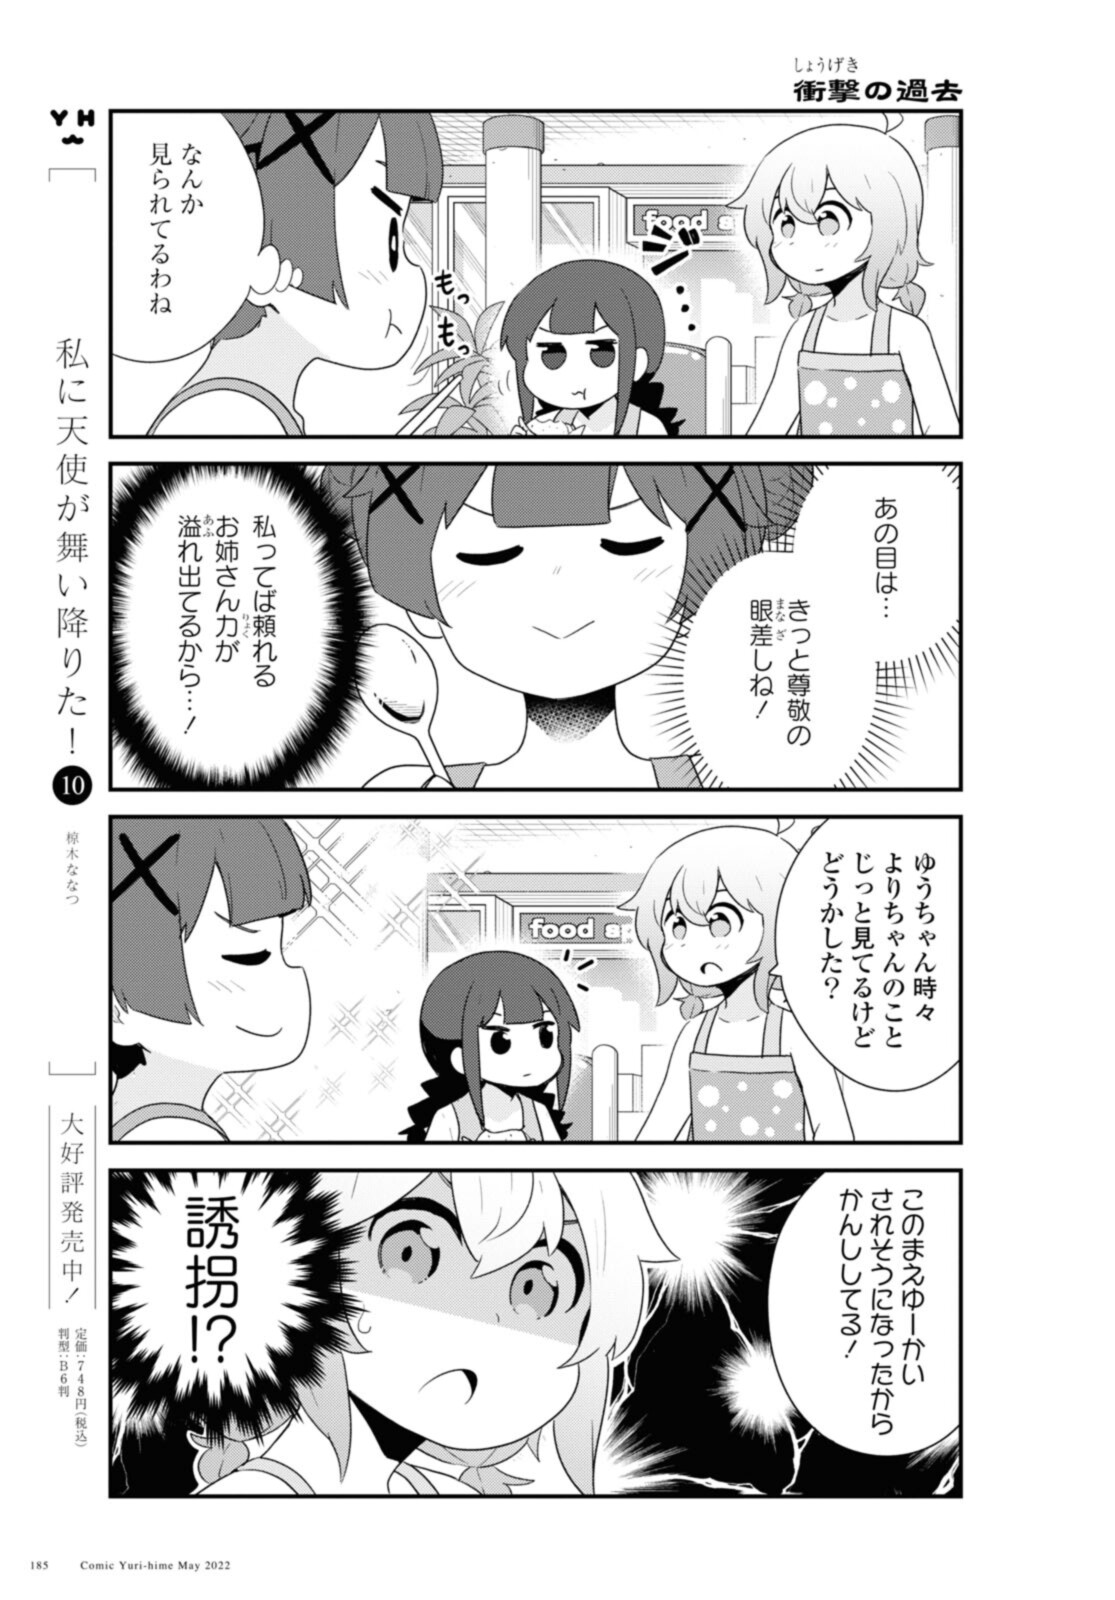 Watashi ni Tenshi ga Maiorita! - Chapter 95 - Page 3